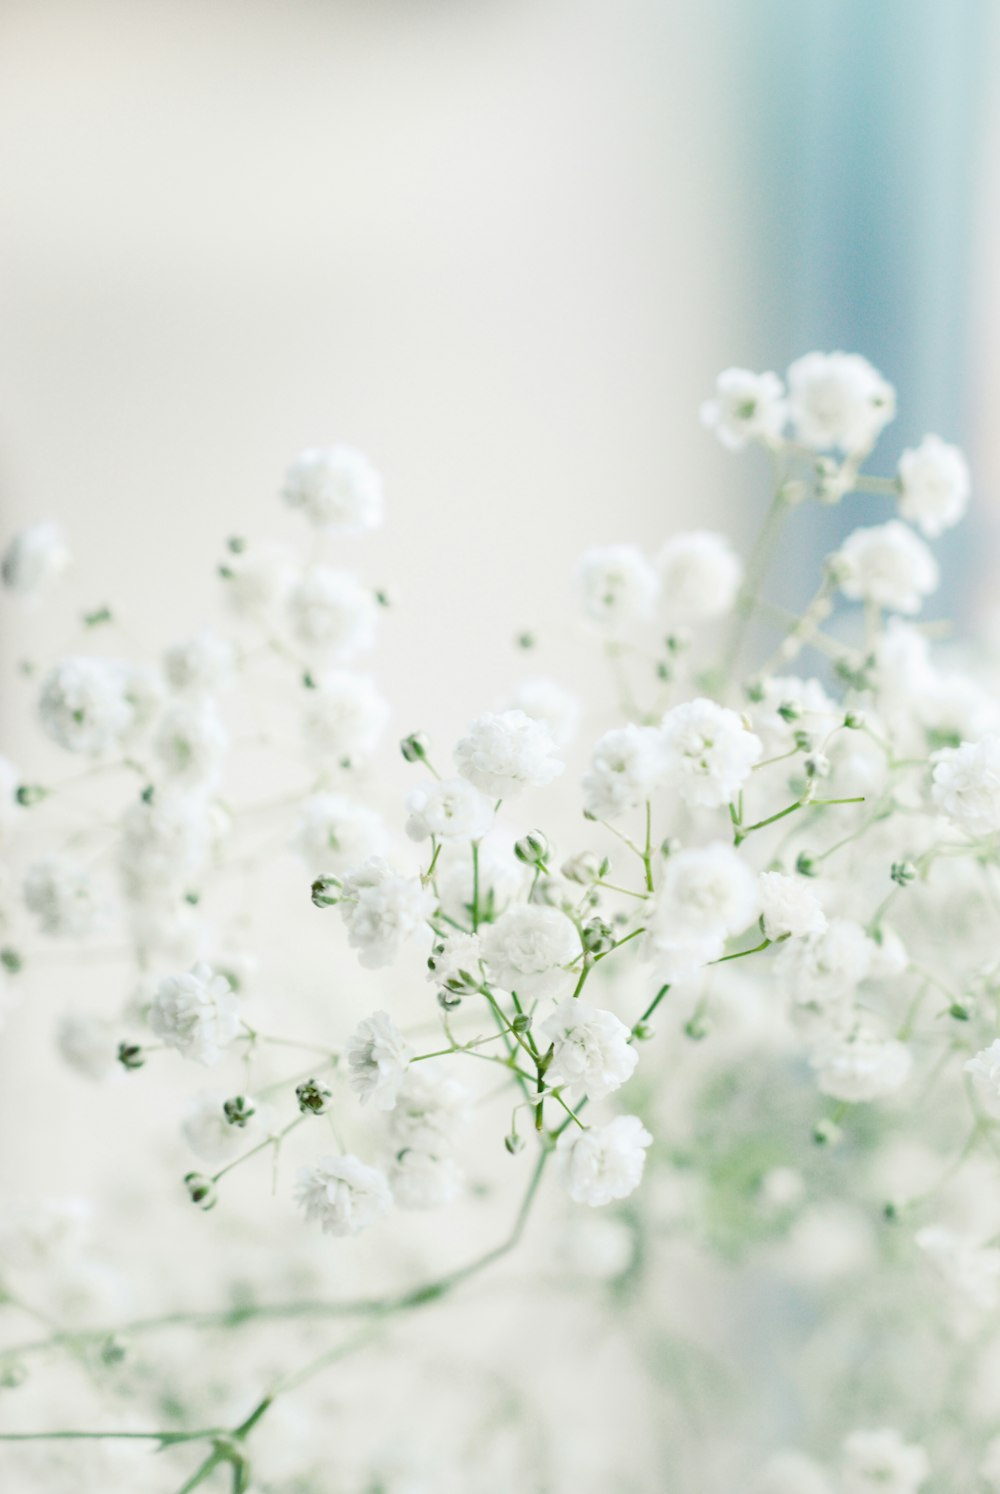 Flores blancas en lente macro